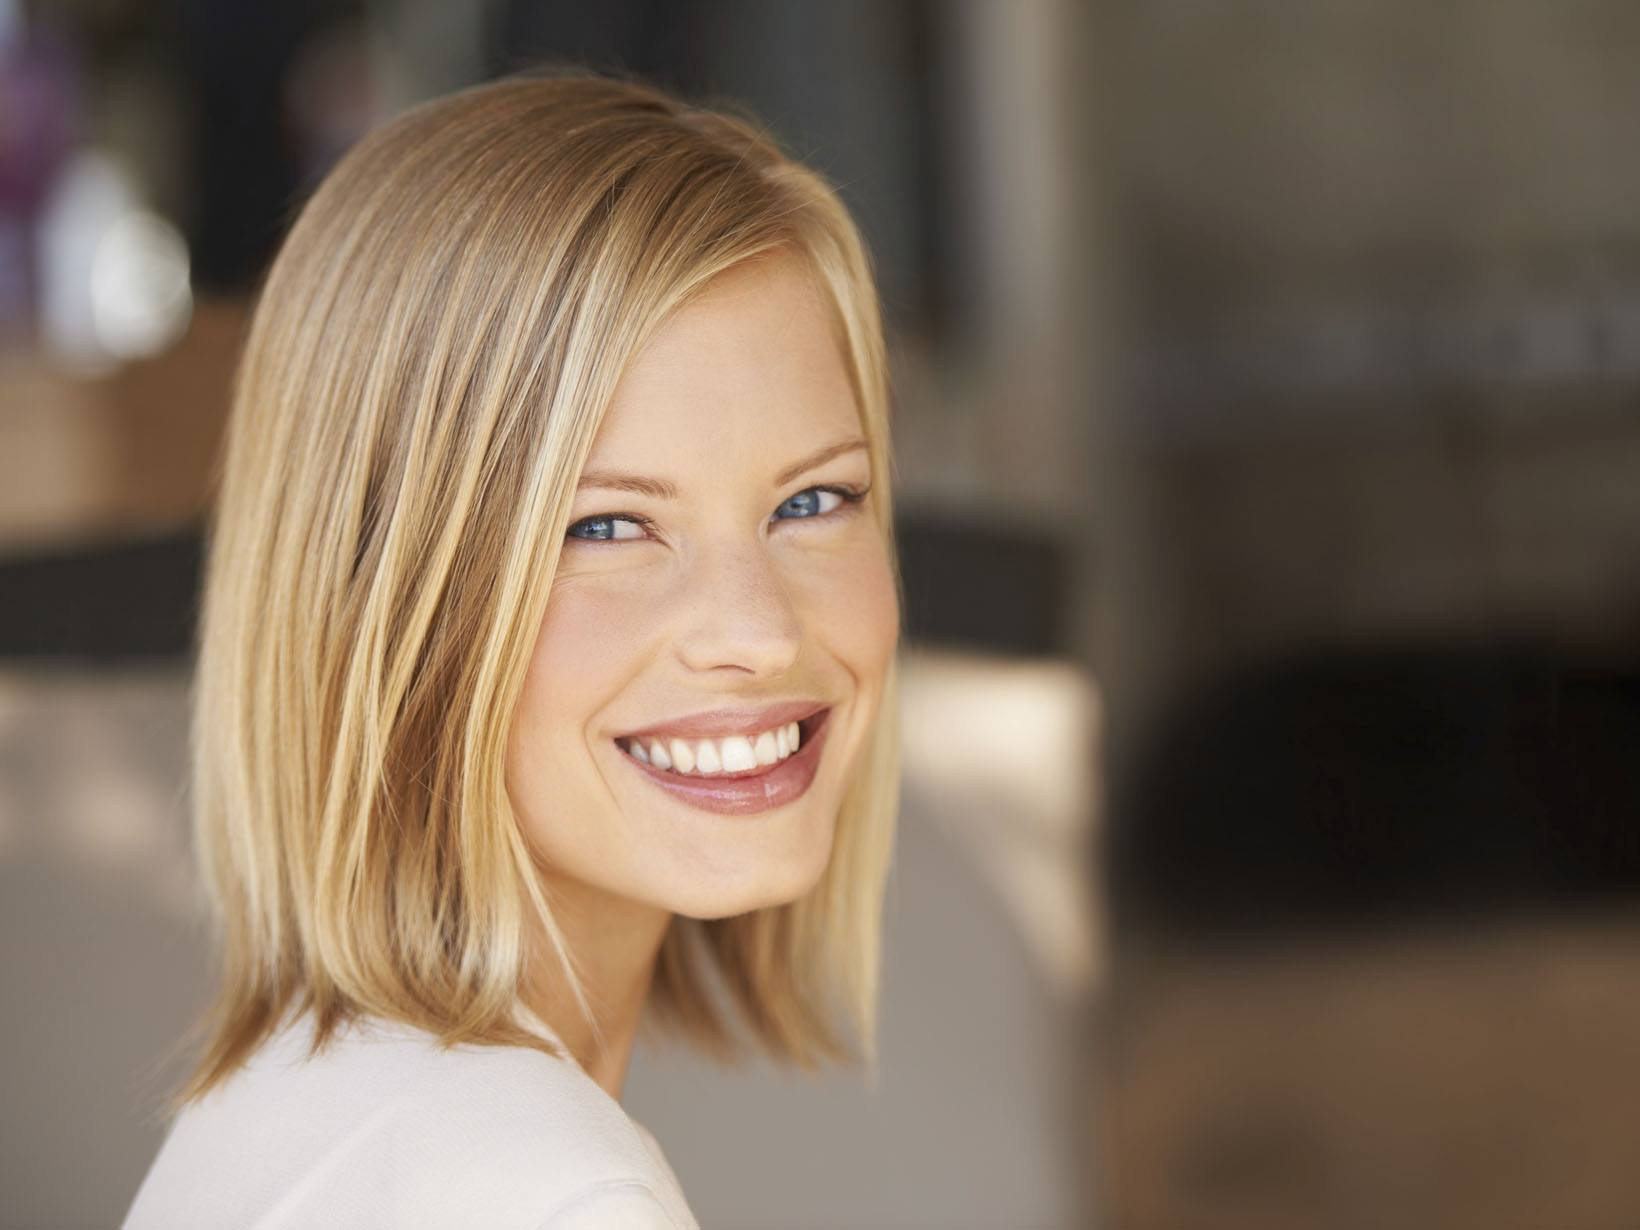 Haarschnitt Glatte Haare
 Glatte Haare Tipps für Pflege und Styling – NIVEA